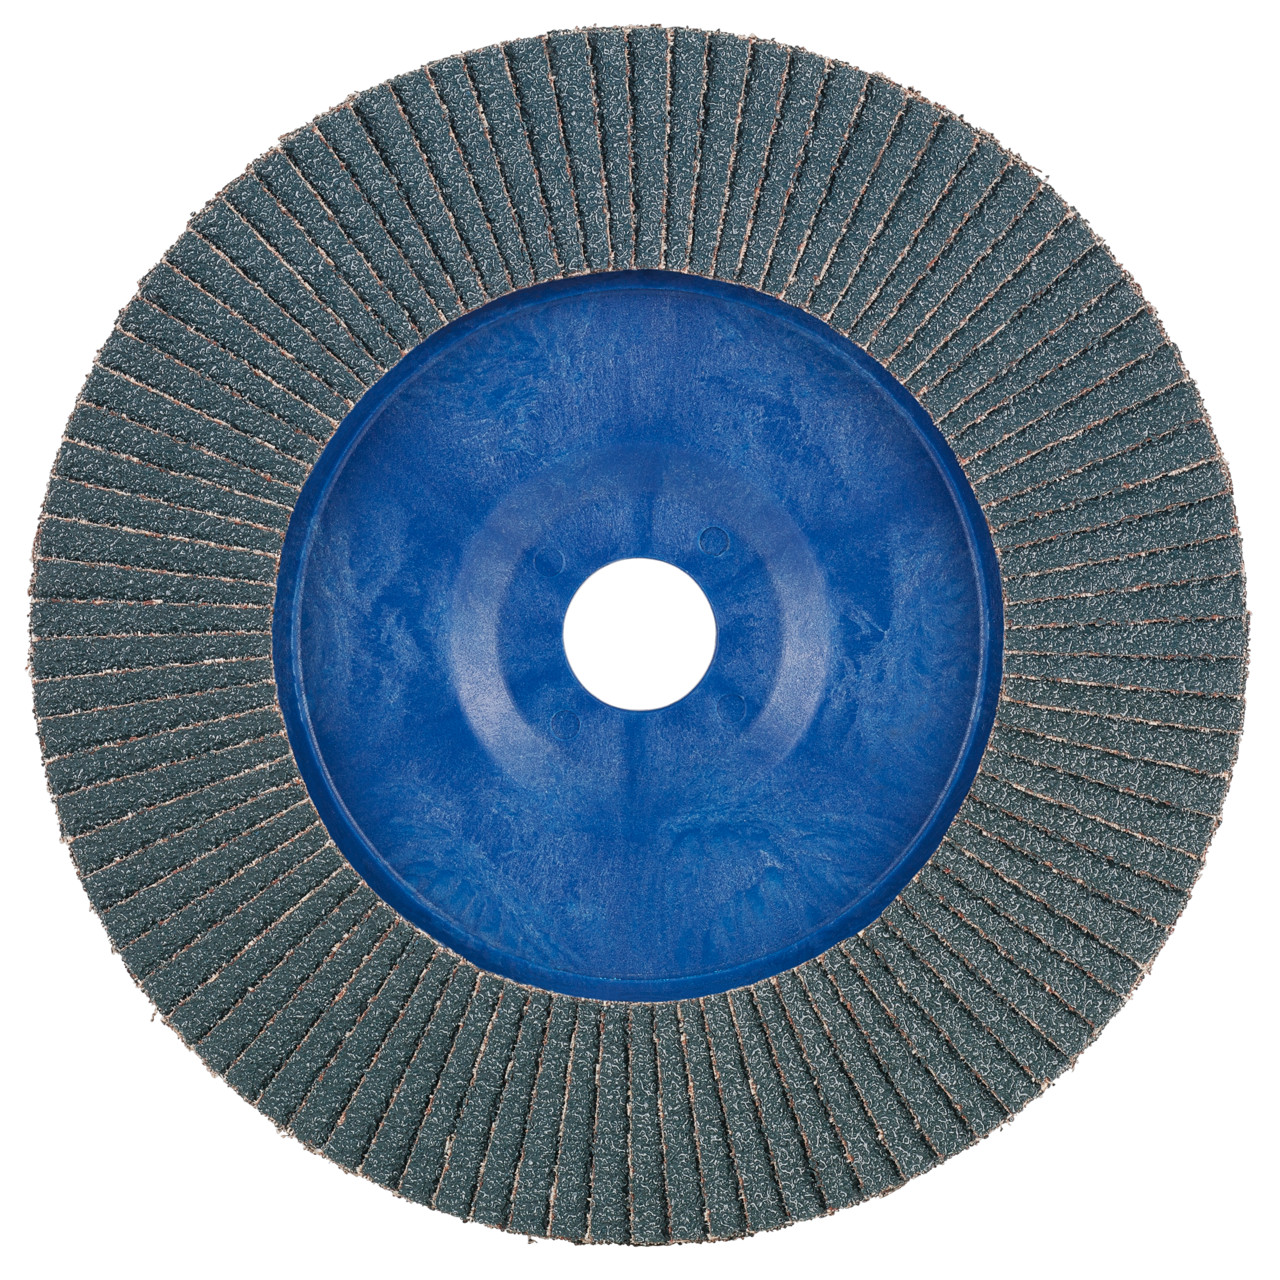 Rondella dentata Tyrolit DxH 115x22.2 2in1 per acciaio e acciaio inox, P120, forma: 28N - versione diritta (corpo portante in plastica), Art. 247165